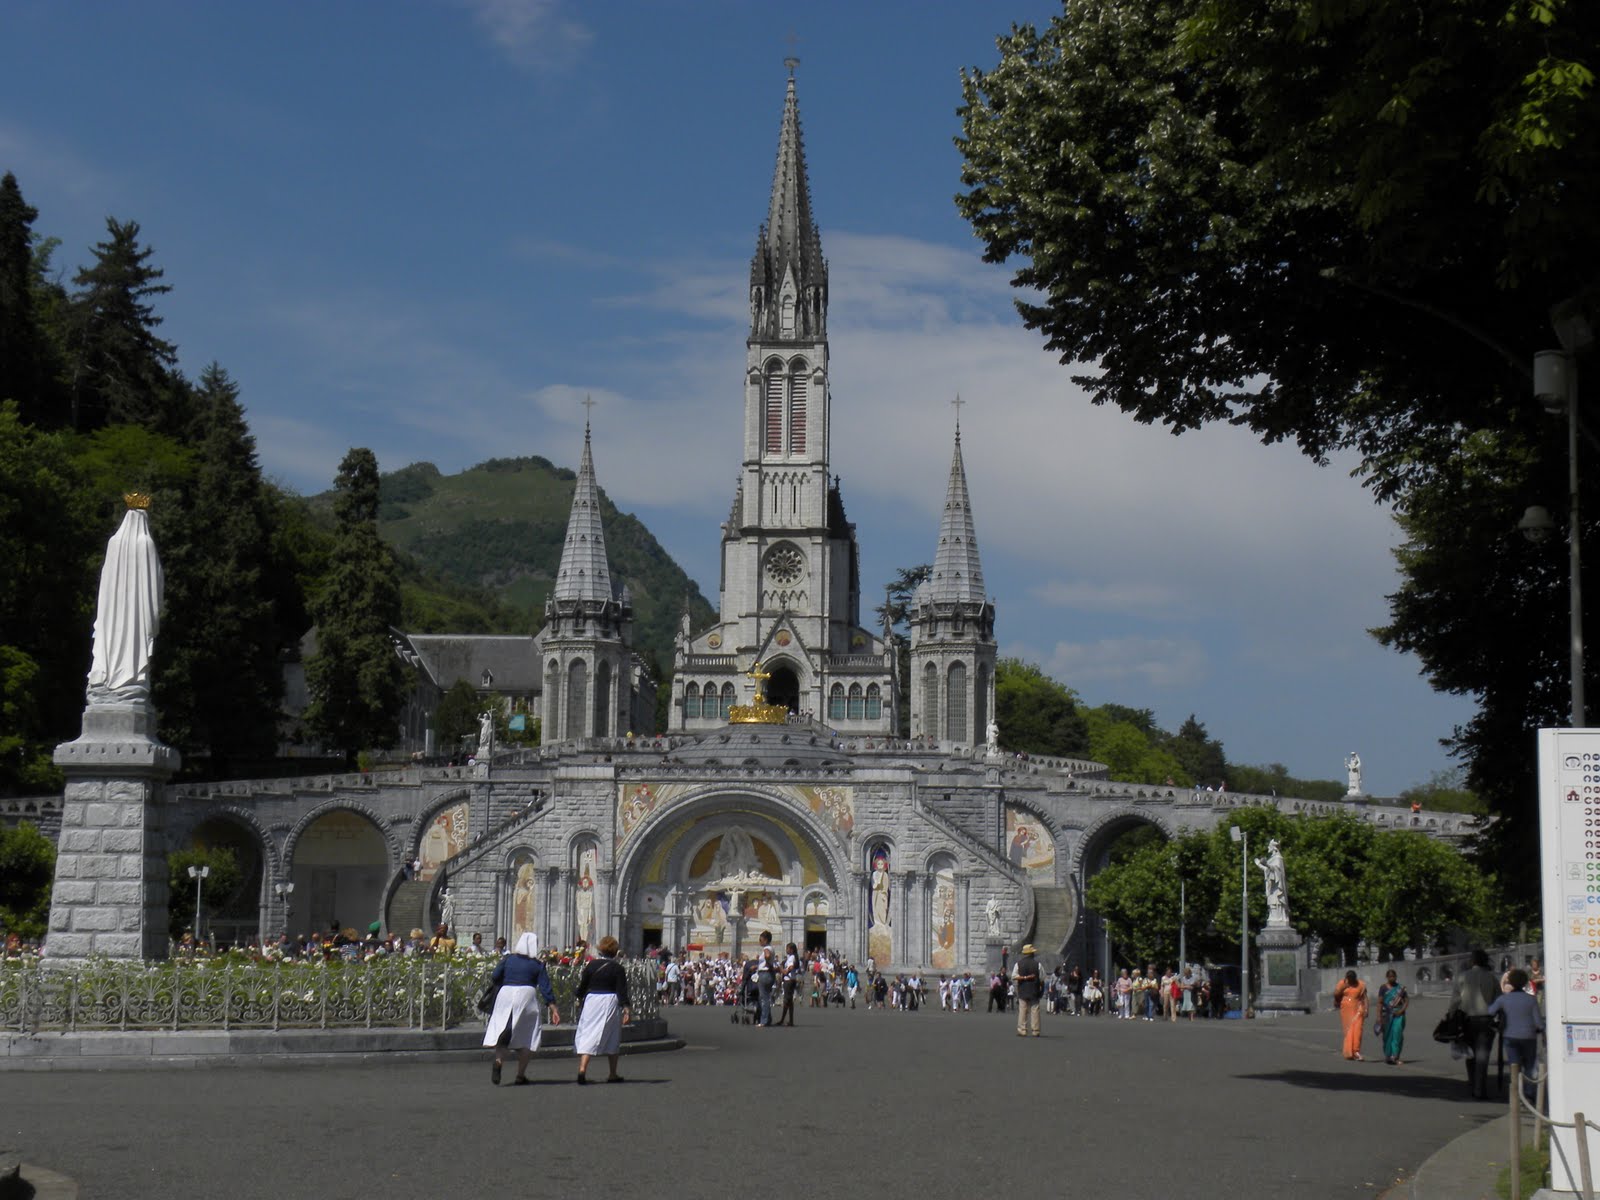 France Summer 2011: Lourdes, France